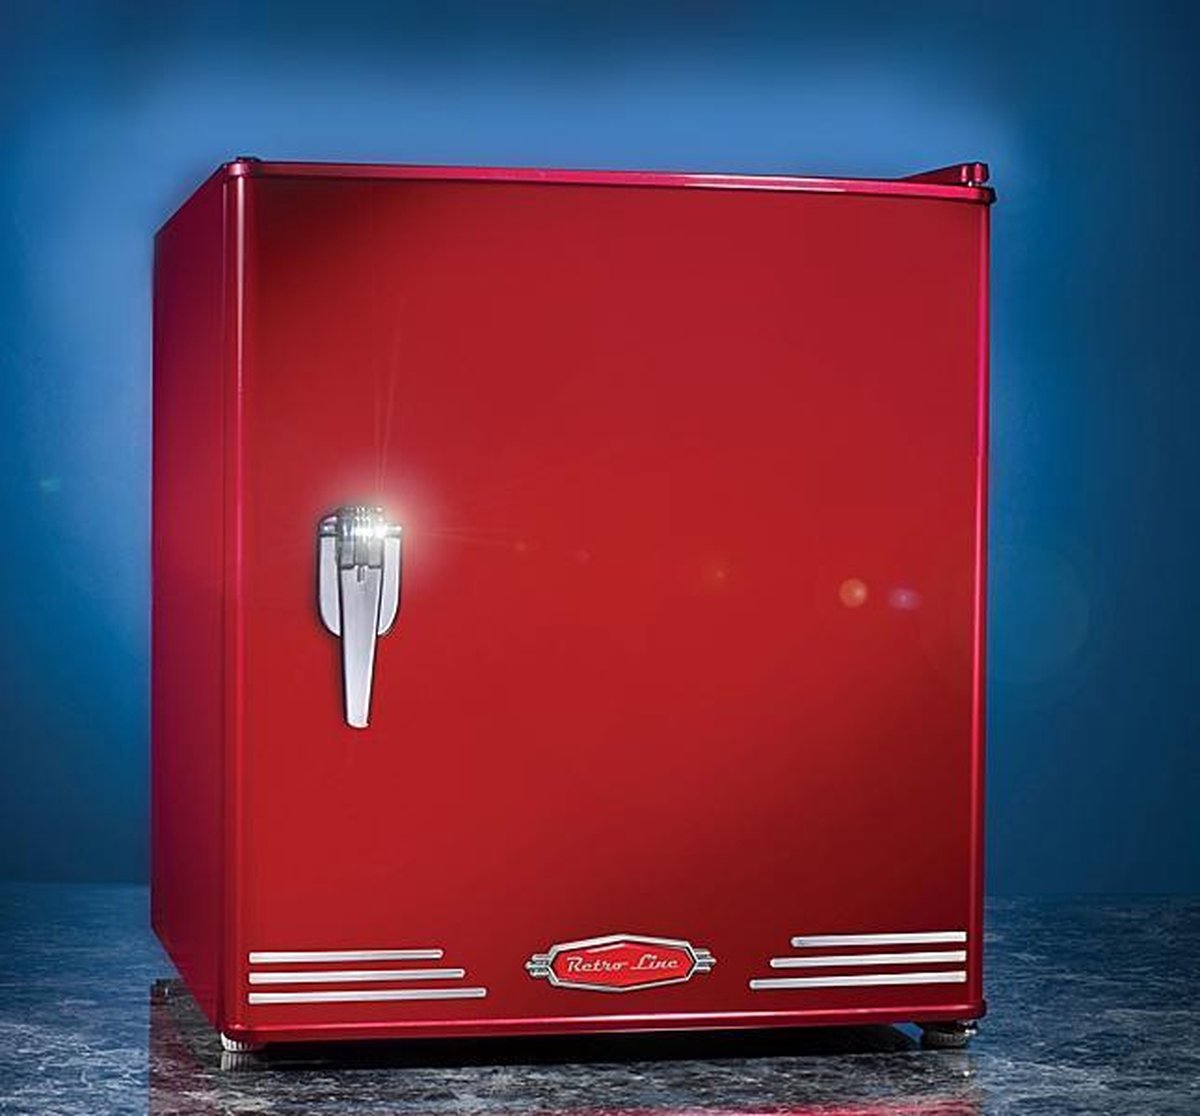 Onderhoud Geboorteplaats desinfecteren Retro Line - Mini koelkast | bol.com